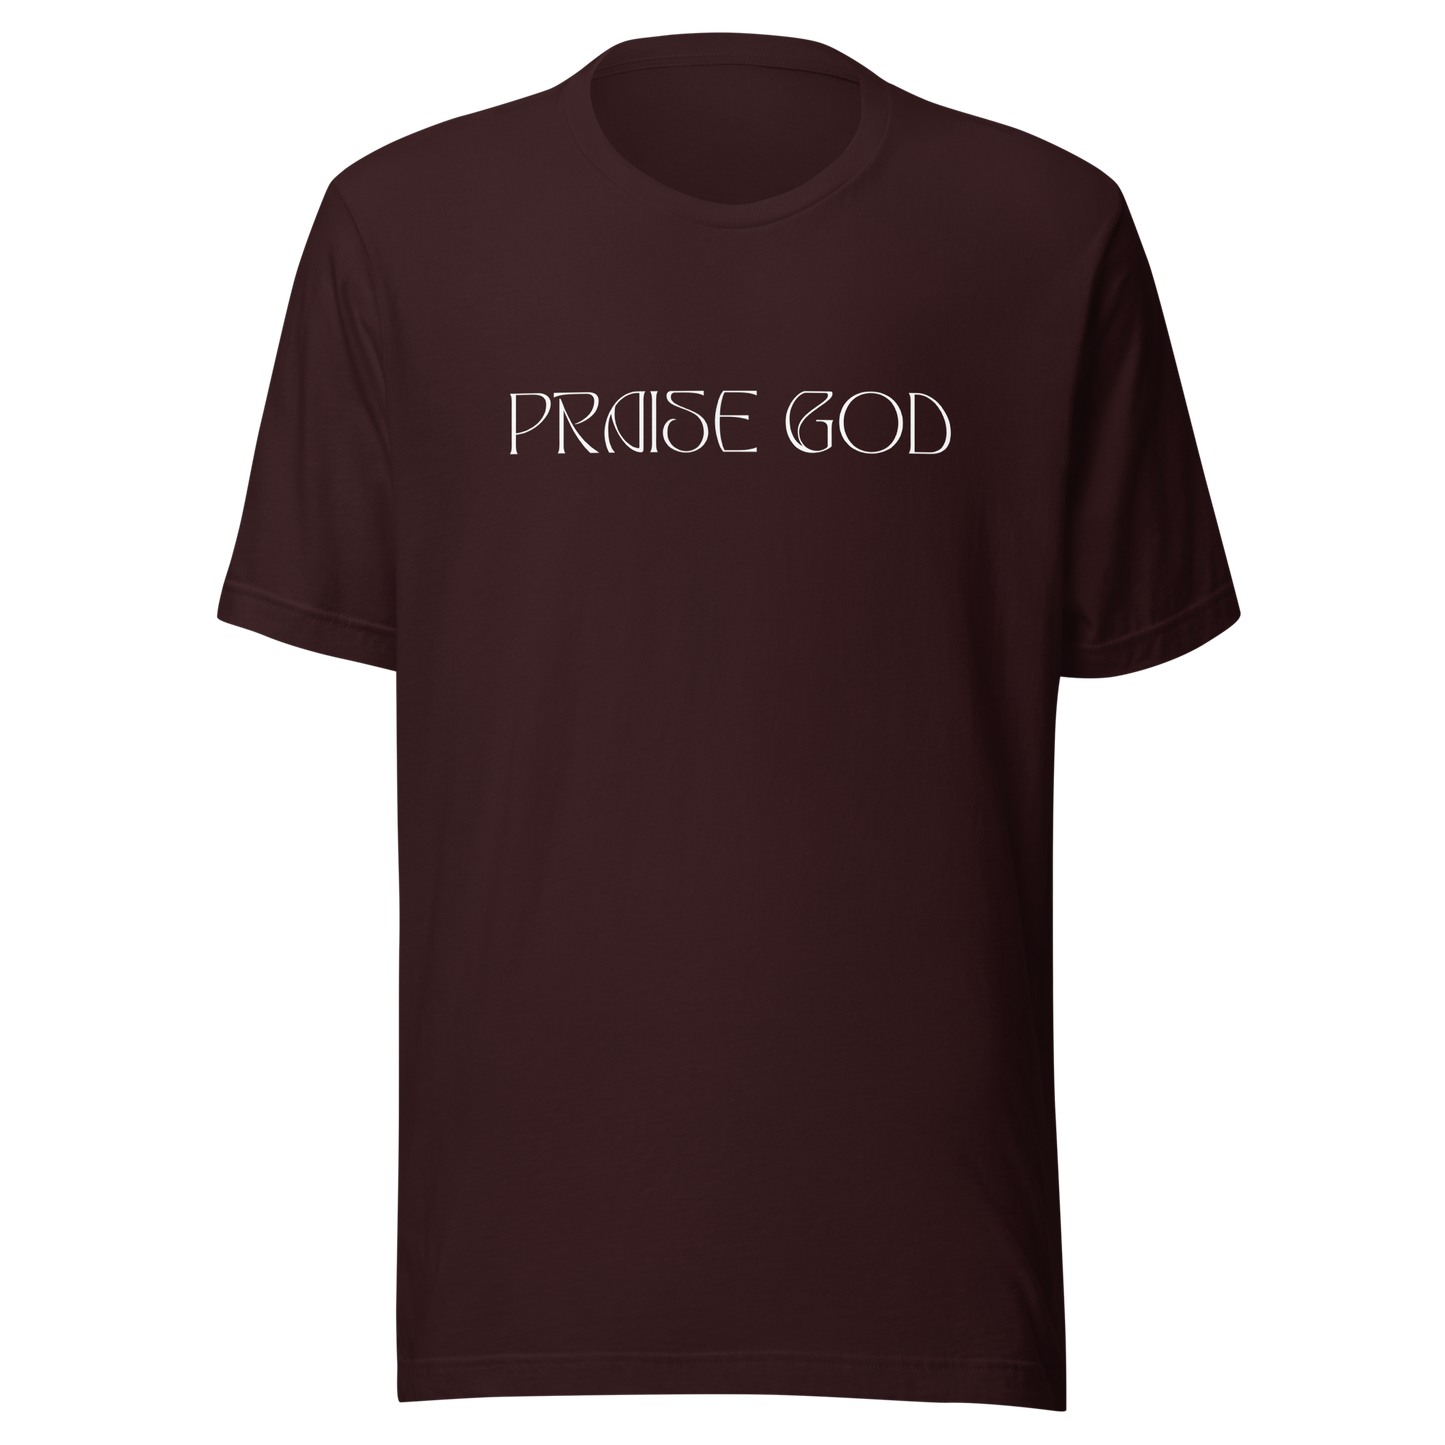 Praise God T-Shirt